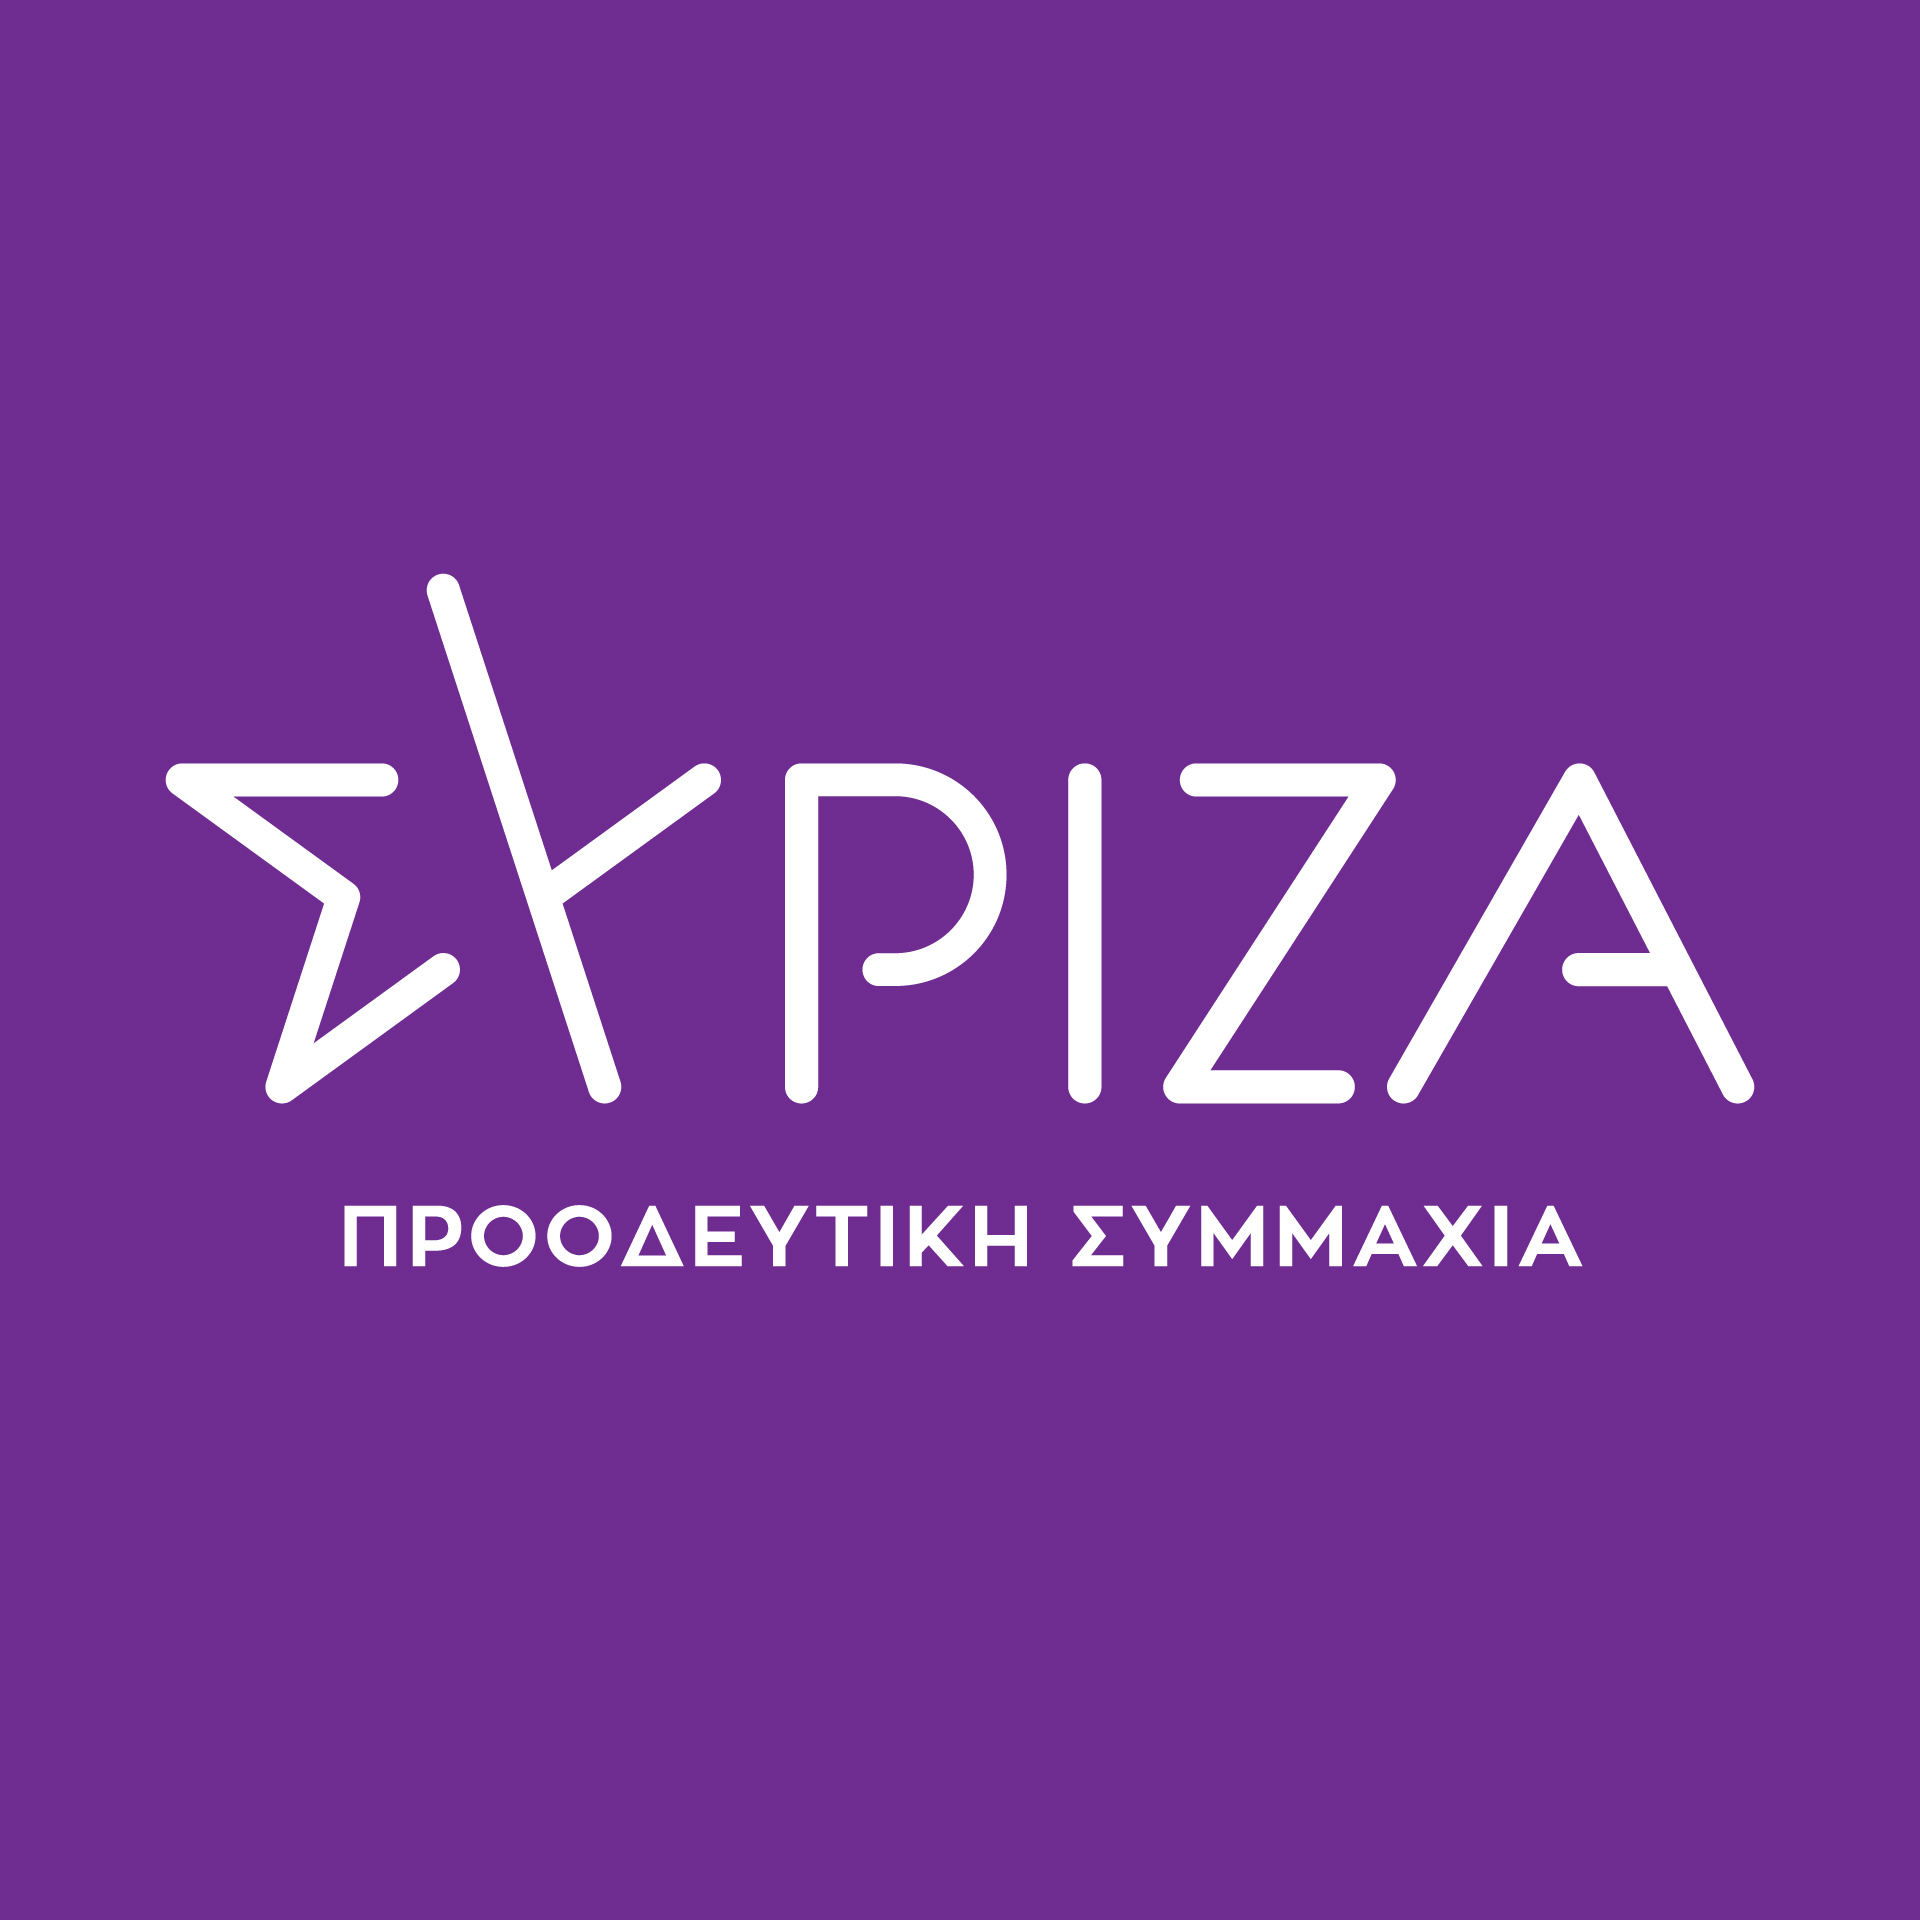 Τμήμα Φεμινιστικής Πολιτικής/Φύλου του ΣΥΡΙΖΑ-Προοδευτική Συμμαχία: «Μίλα– Δράσε»  - Δεν αφήνουμε καμία μόνη της